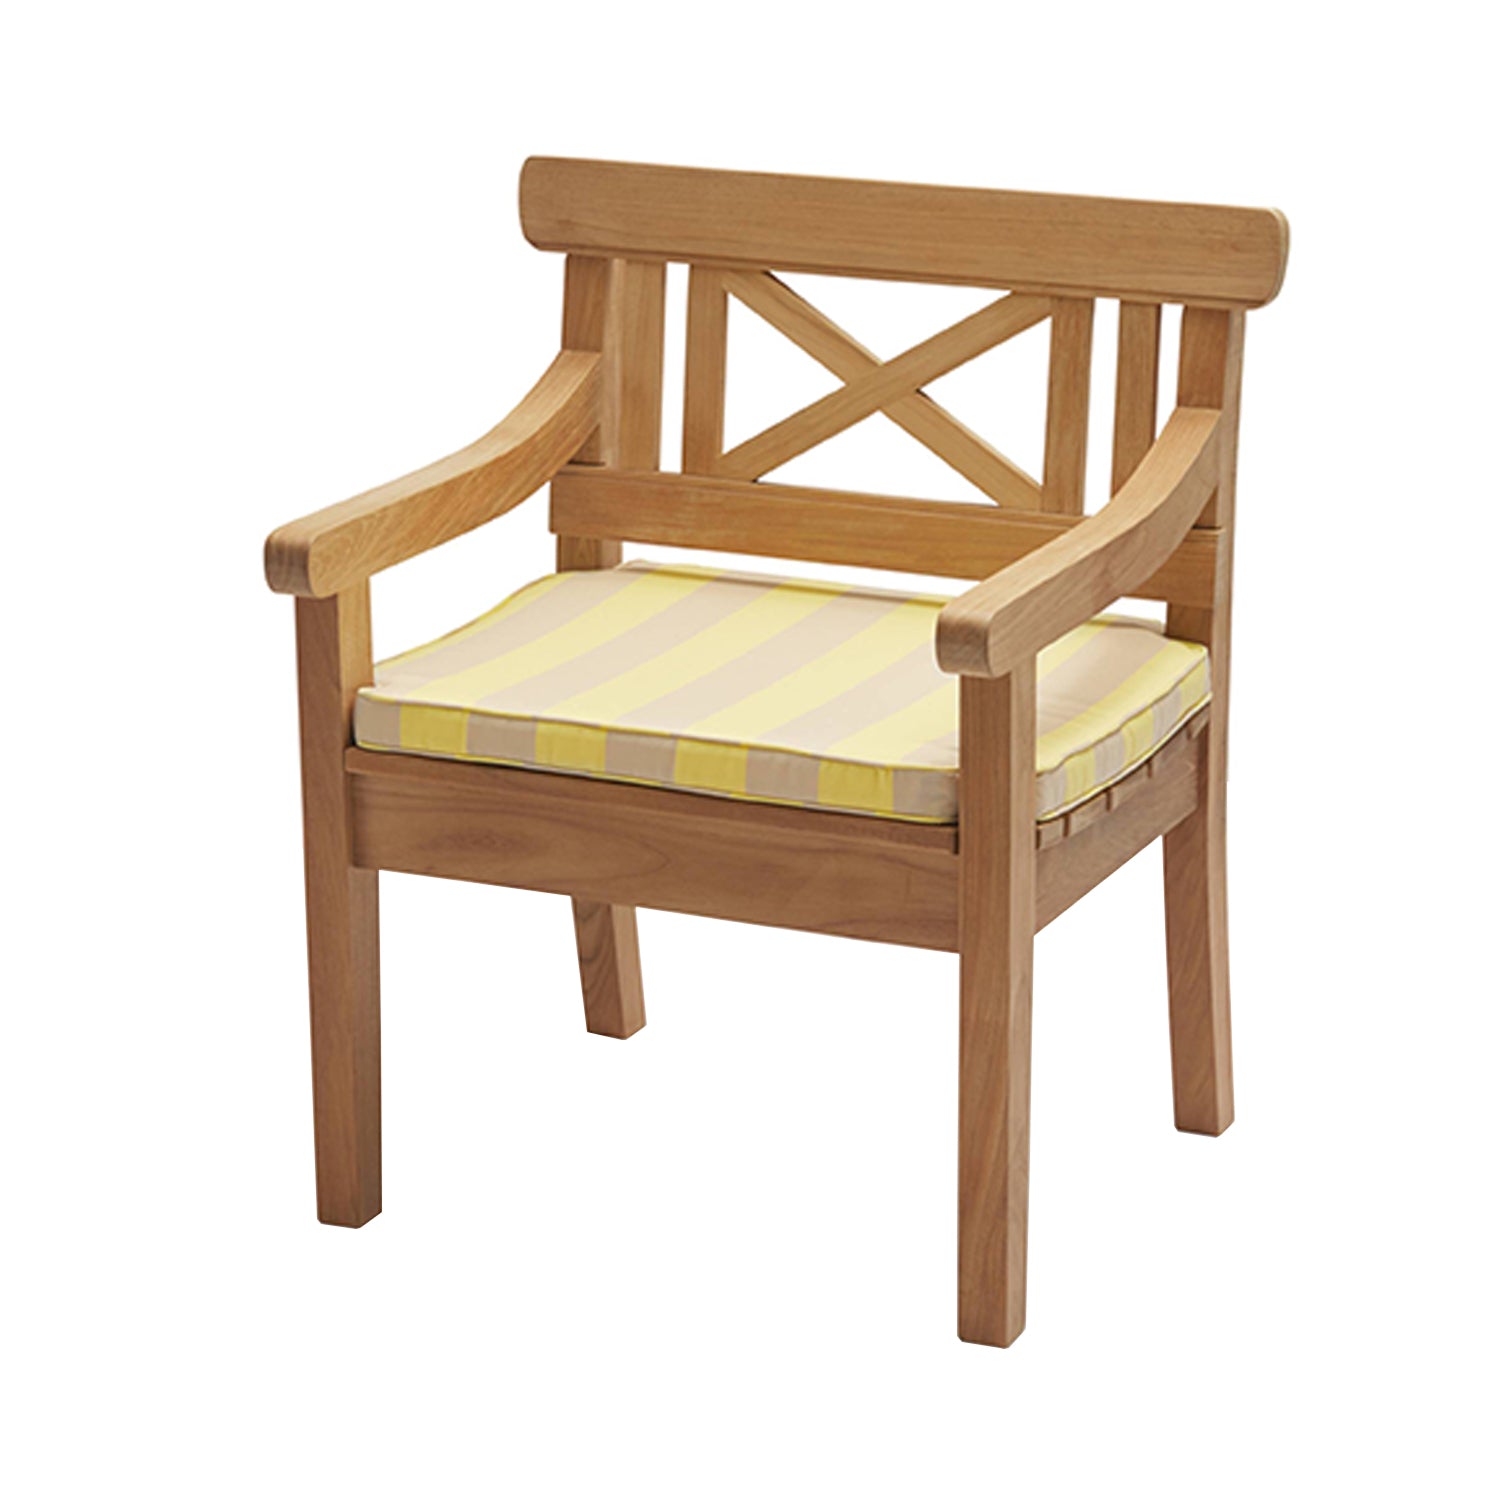 Drachmann Chair: Lemon + Sand Cushion